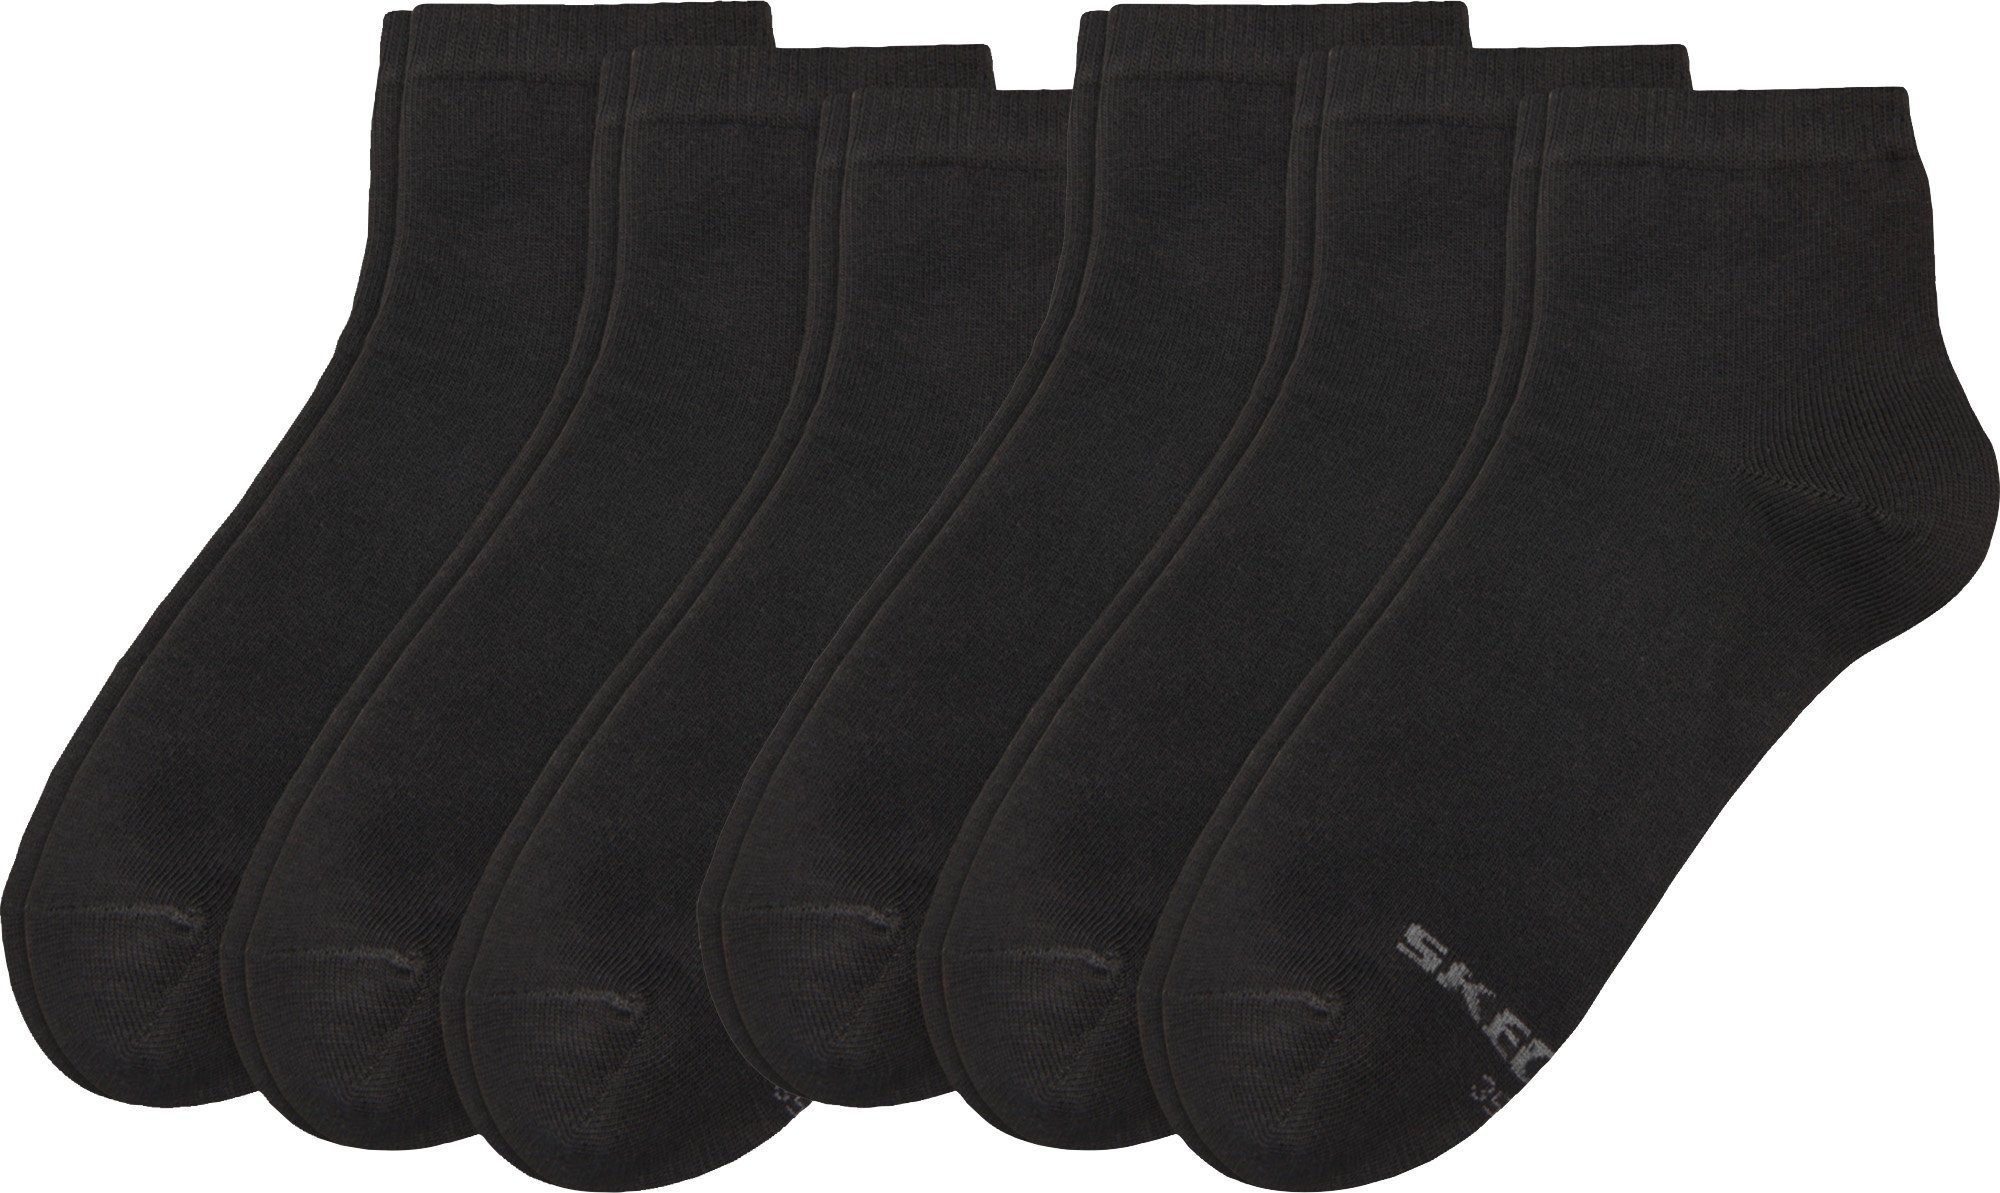 Damen-Kurzsocken Socken Paar Uni 6 Skechers schwarz